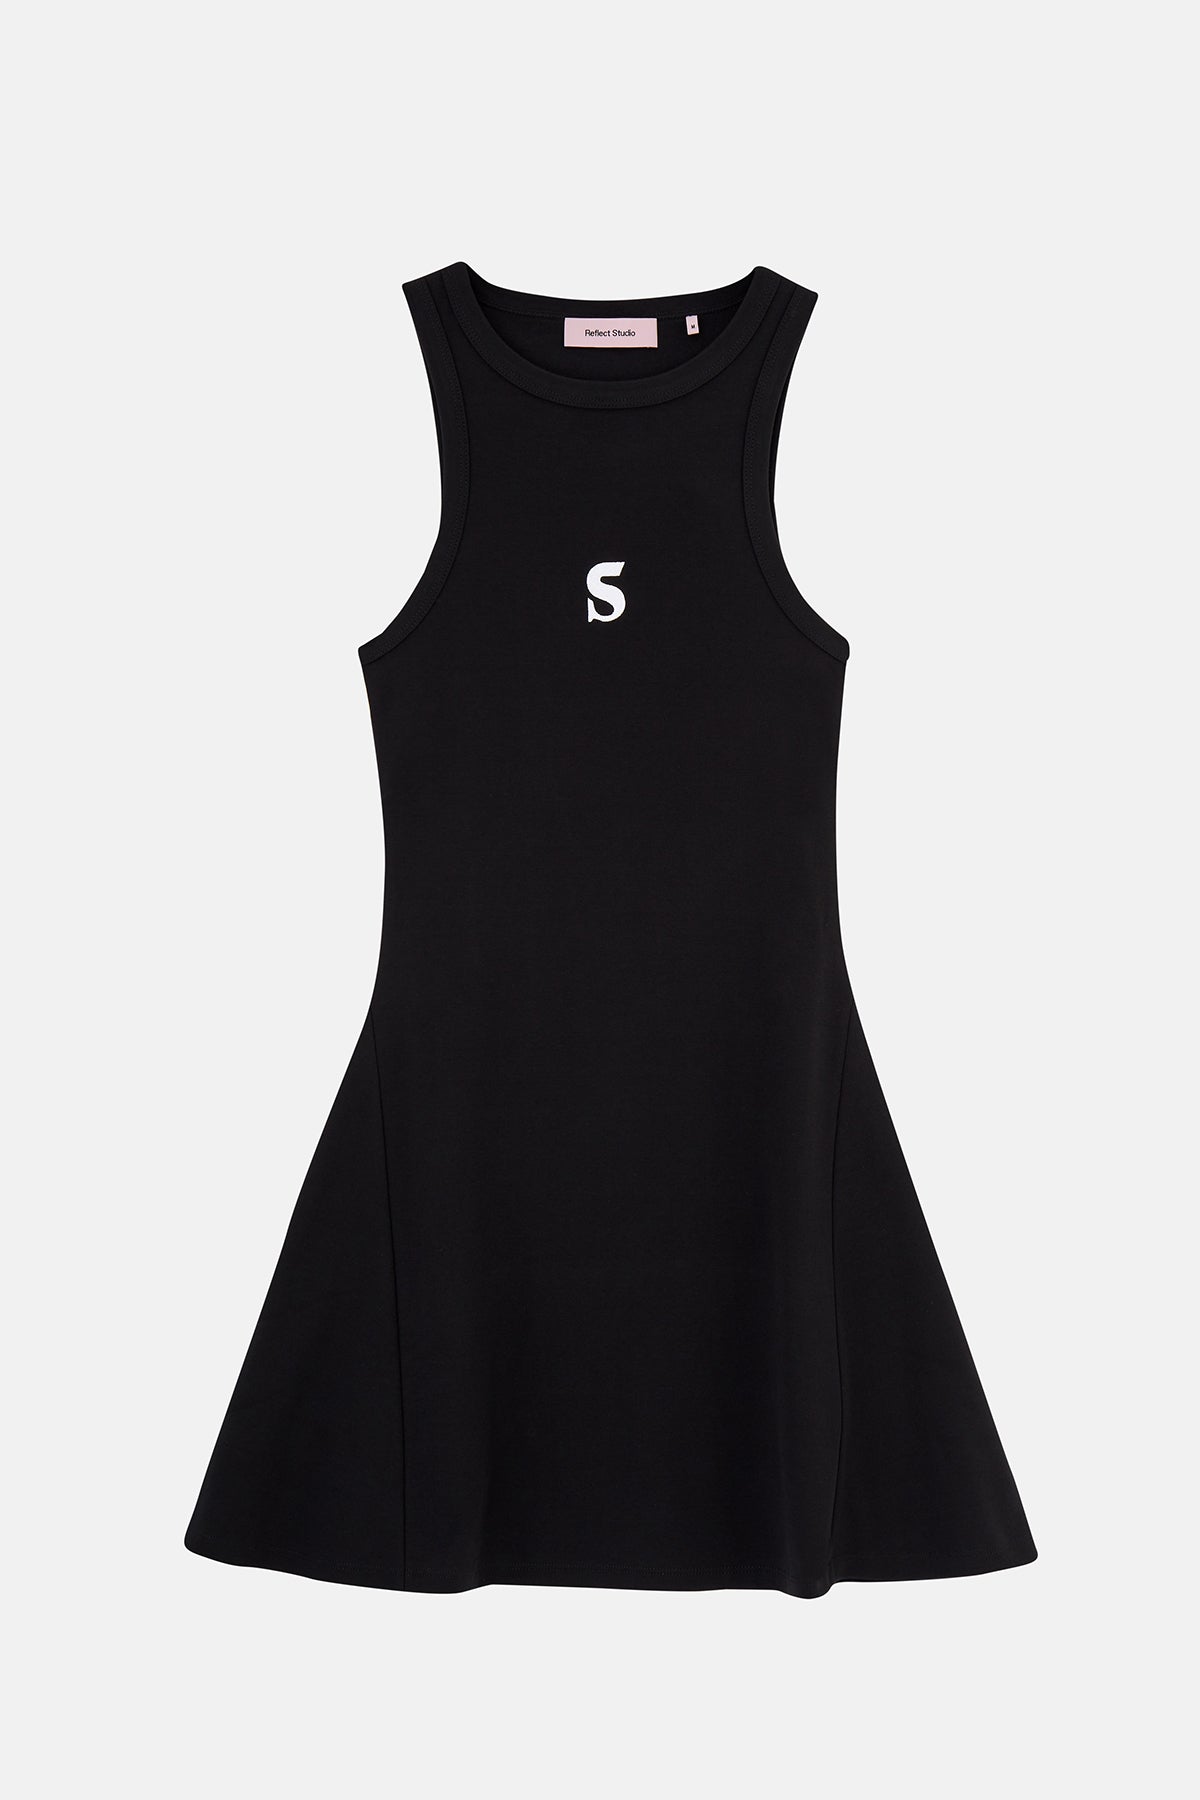 Socrates Logo Premium Elbise - Siyah